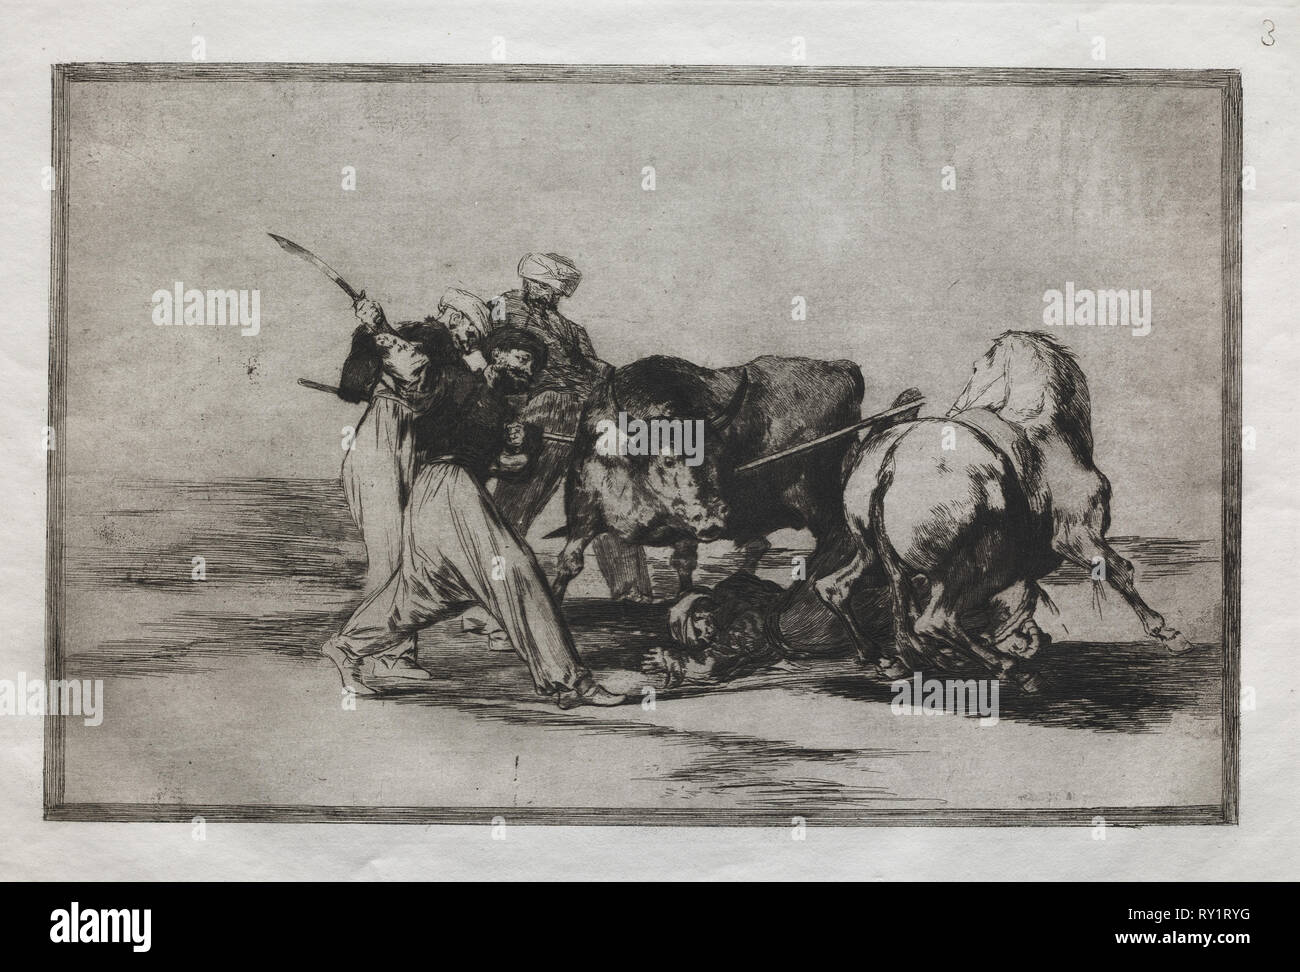 Corridas : les musulmans installés en Espagne, d'abandonner les superstitions du Coran, a adopté cet art de la chasse, et lance un taureau dans l'Open, 1876. Francisco de Goya (Espagnol, 1746-1828). Gravure Banque D'Images